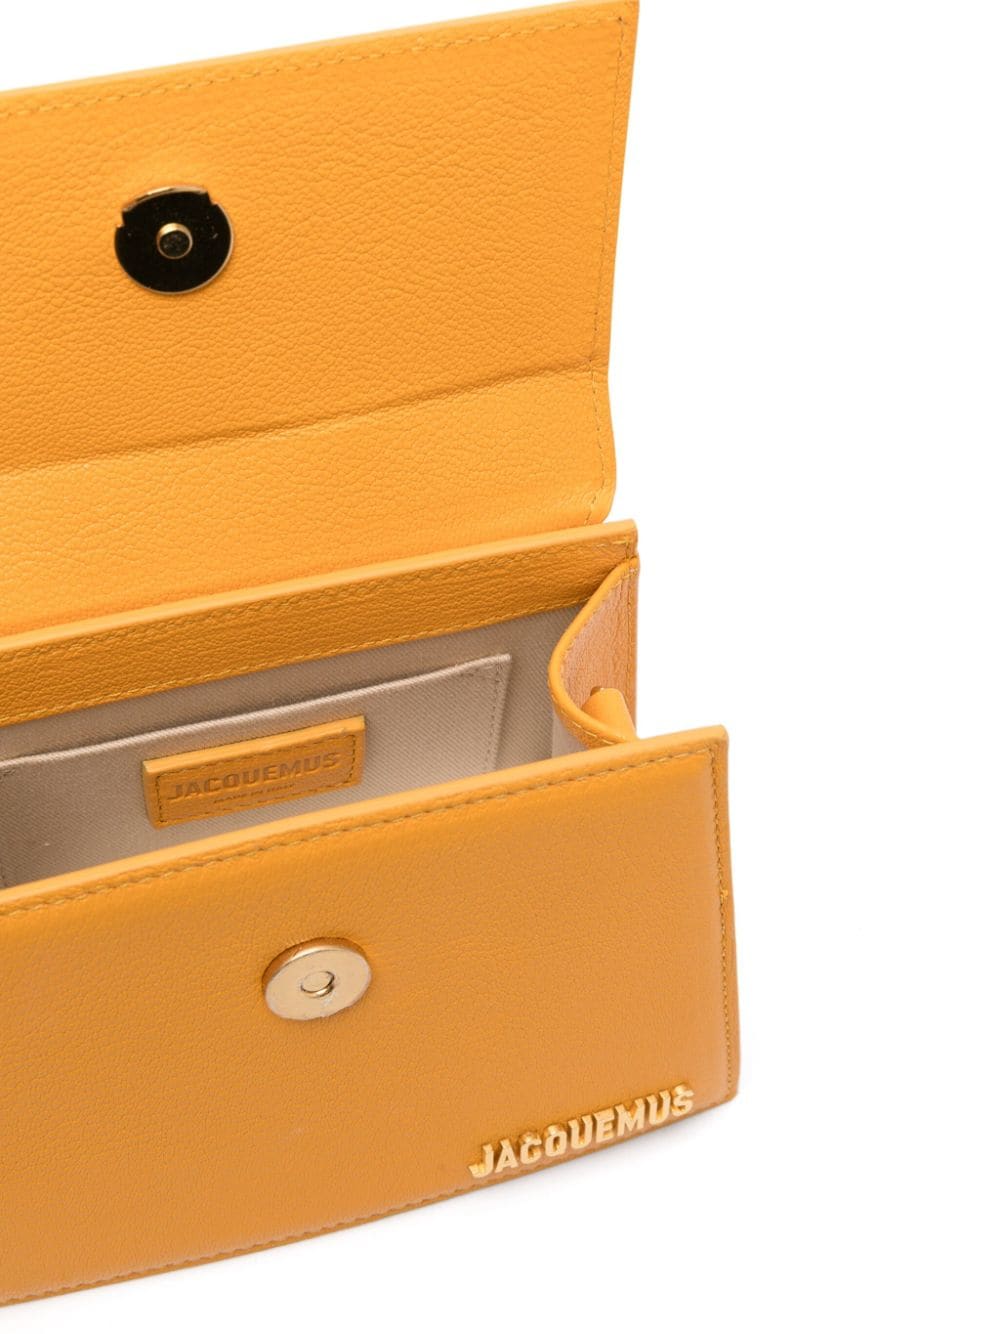 经典橙色绵羊皮手提包附可调节肩带和金色挂牌饰品